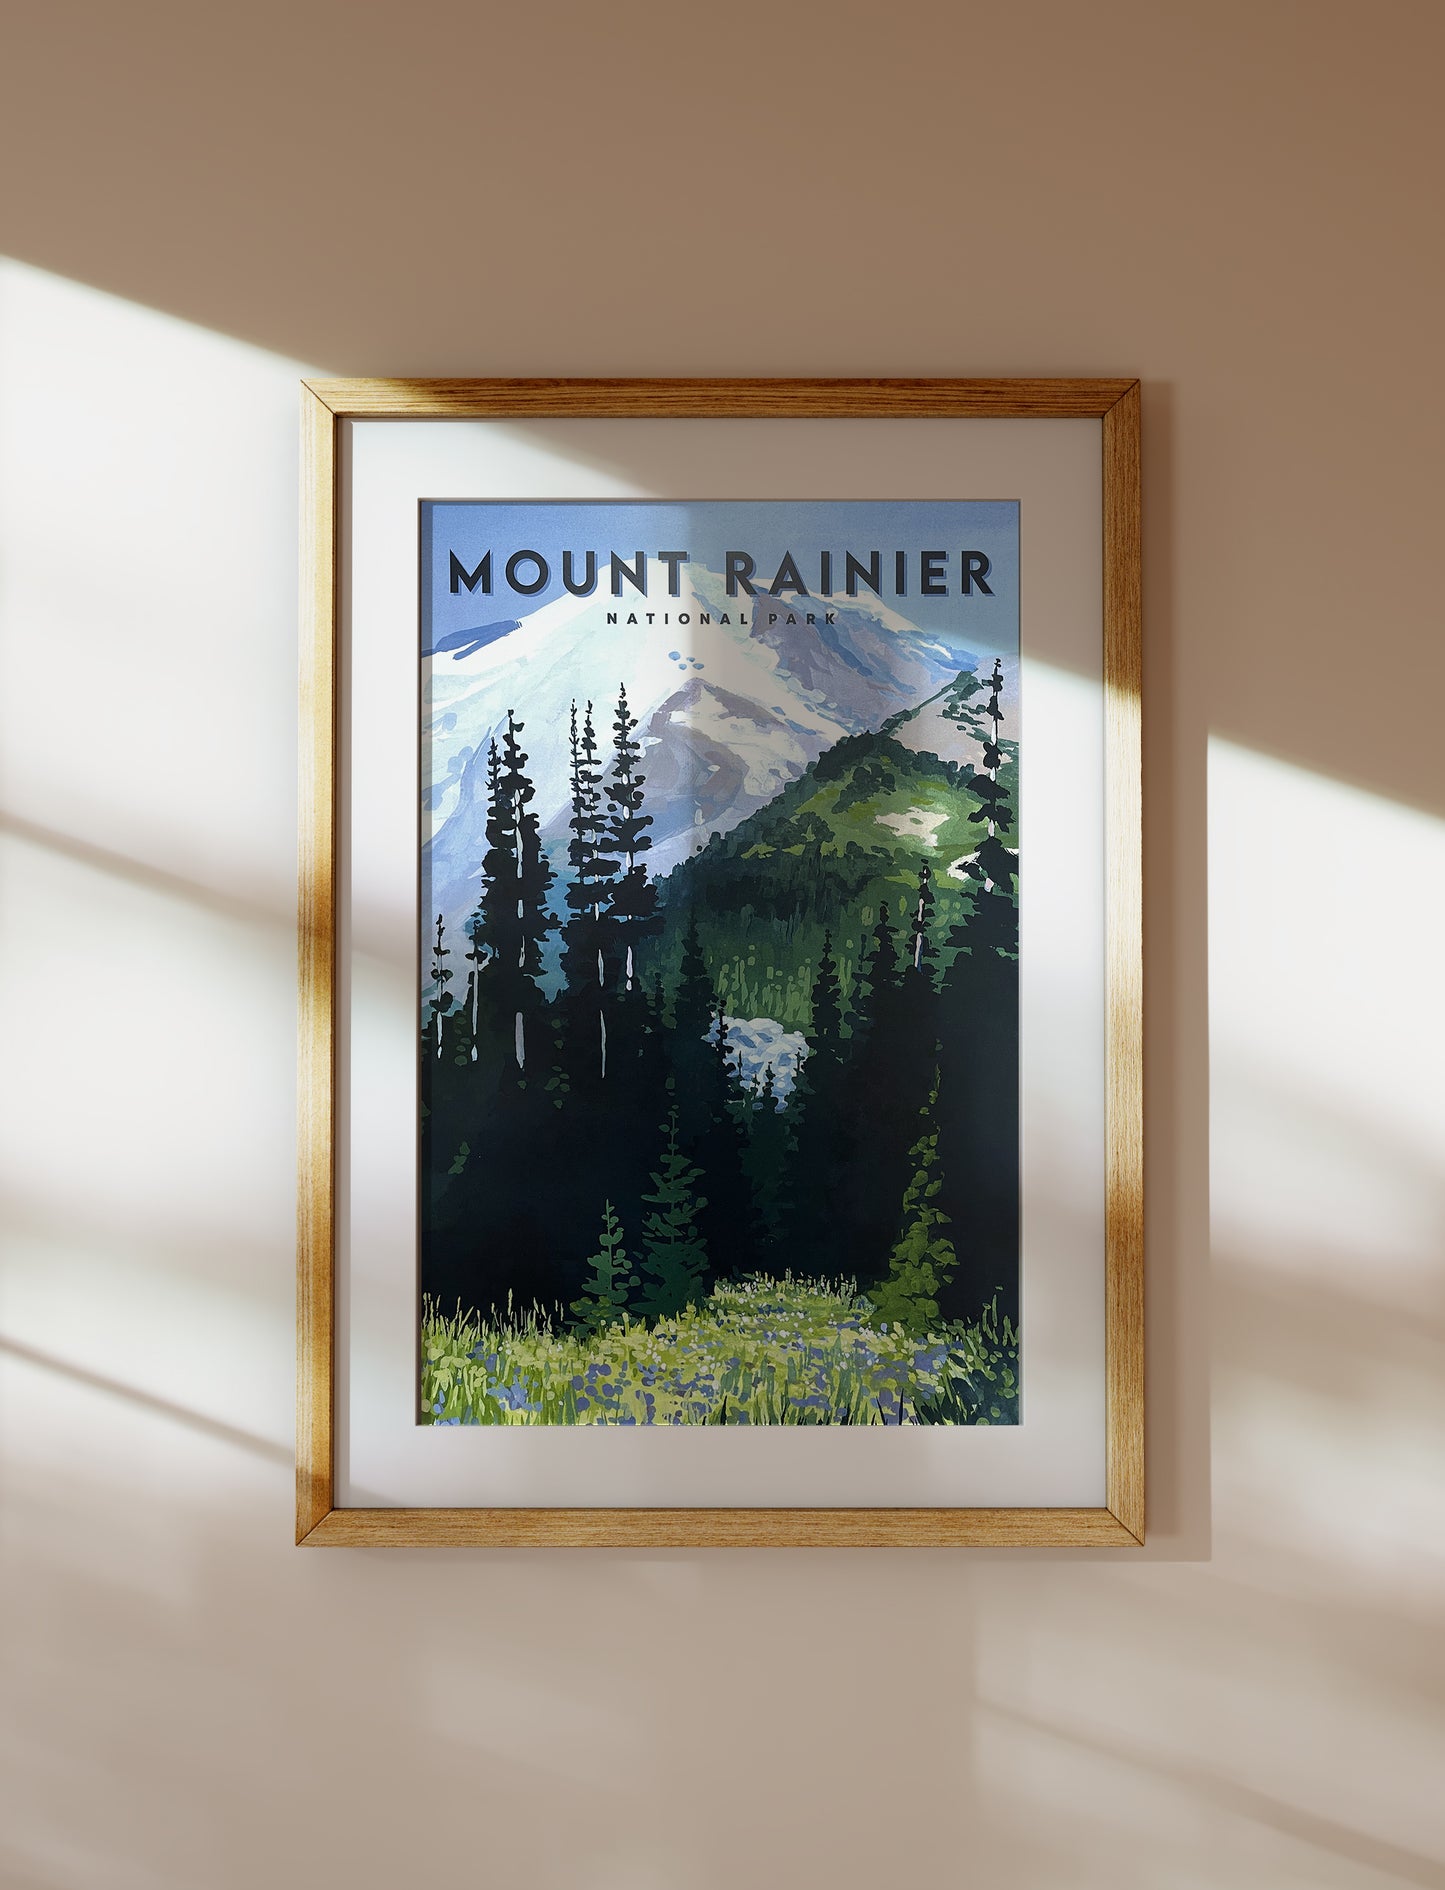 'Mount Rainier' National Park Travel Poster